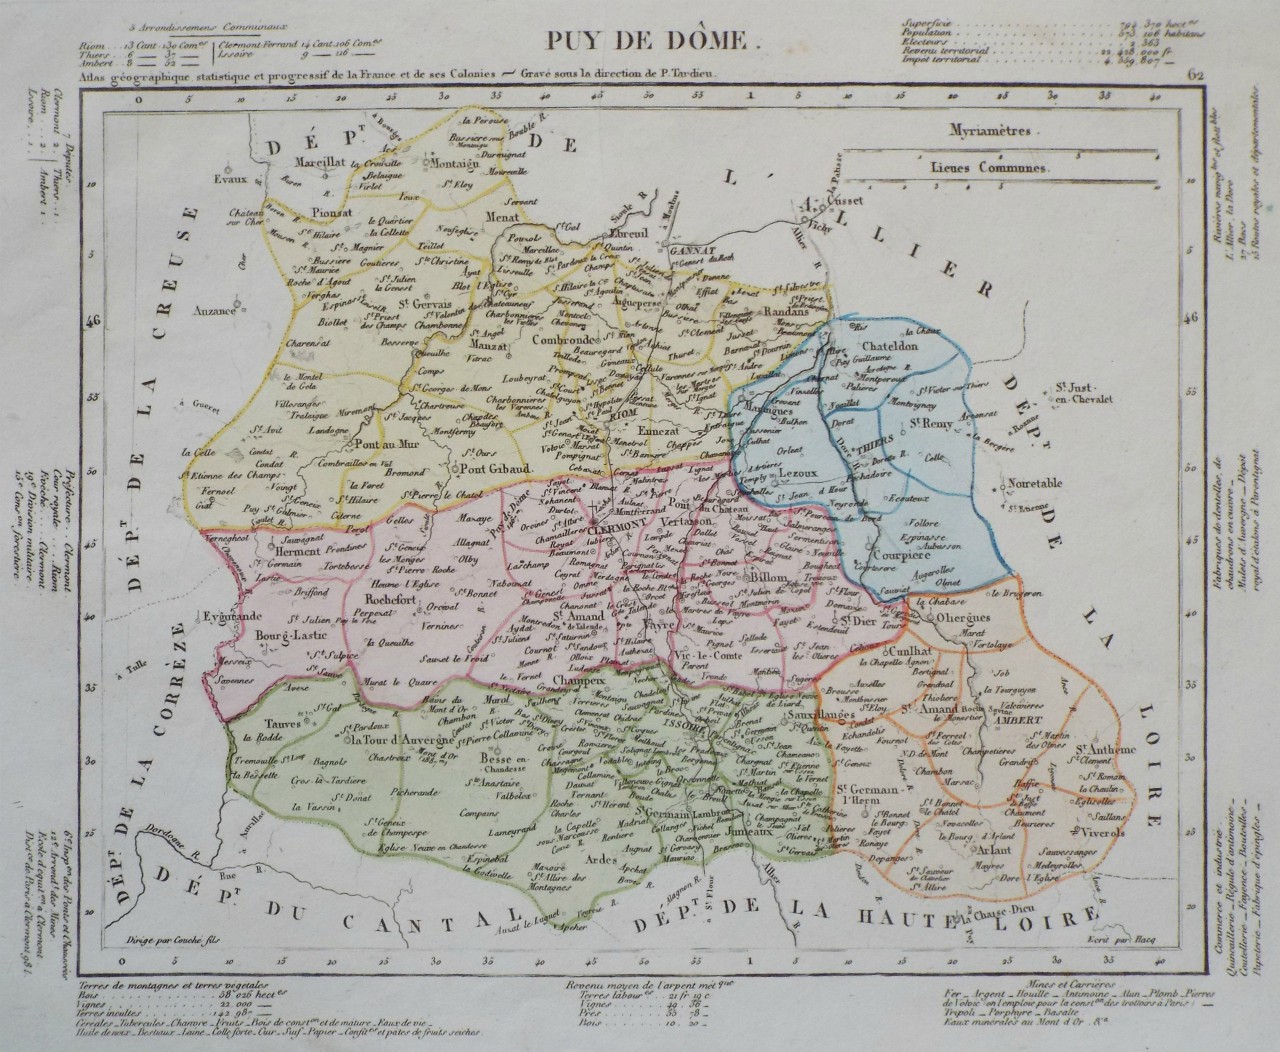 Map of Puy de Dome